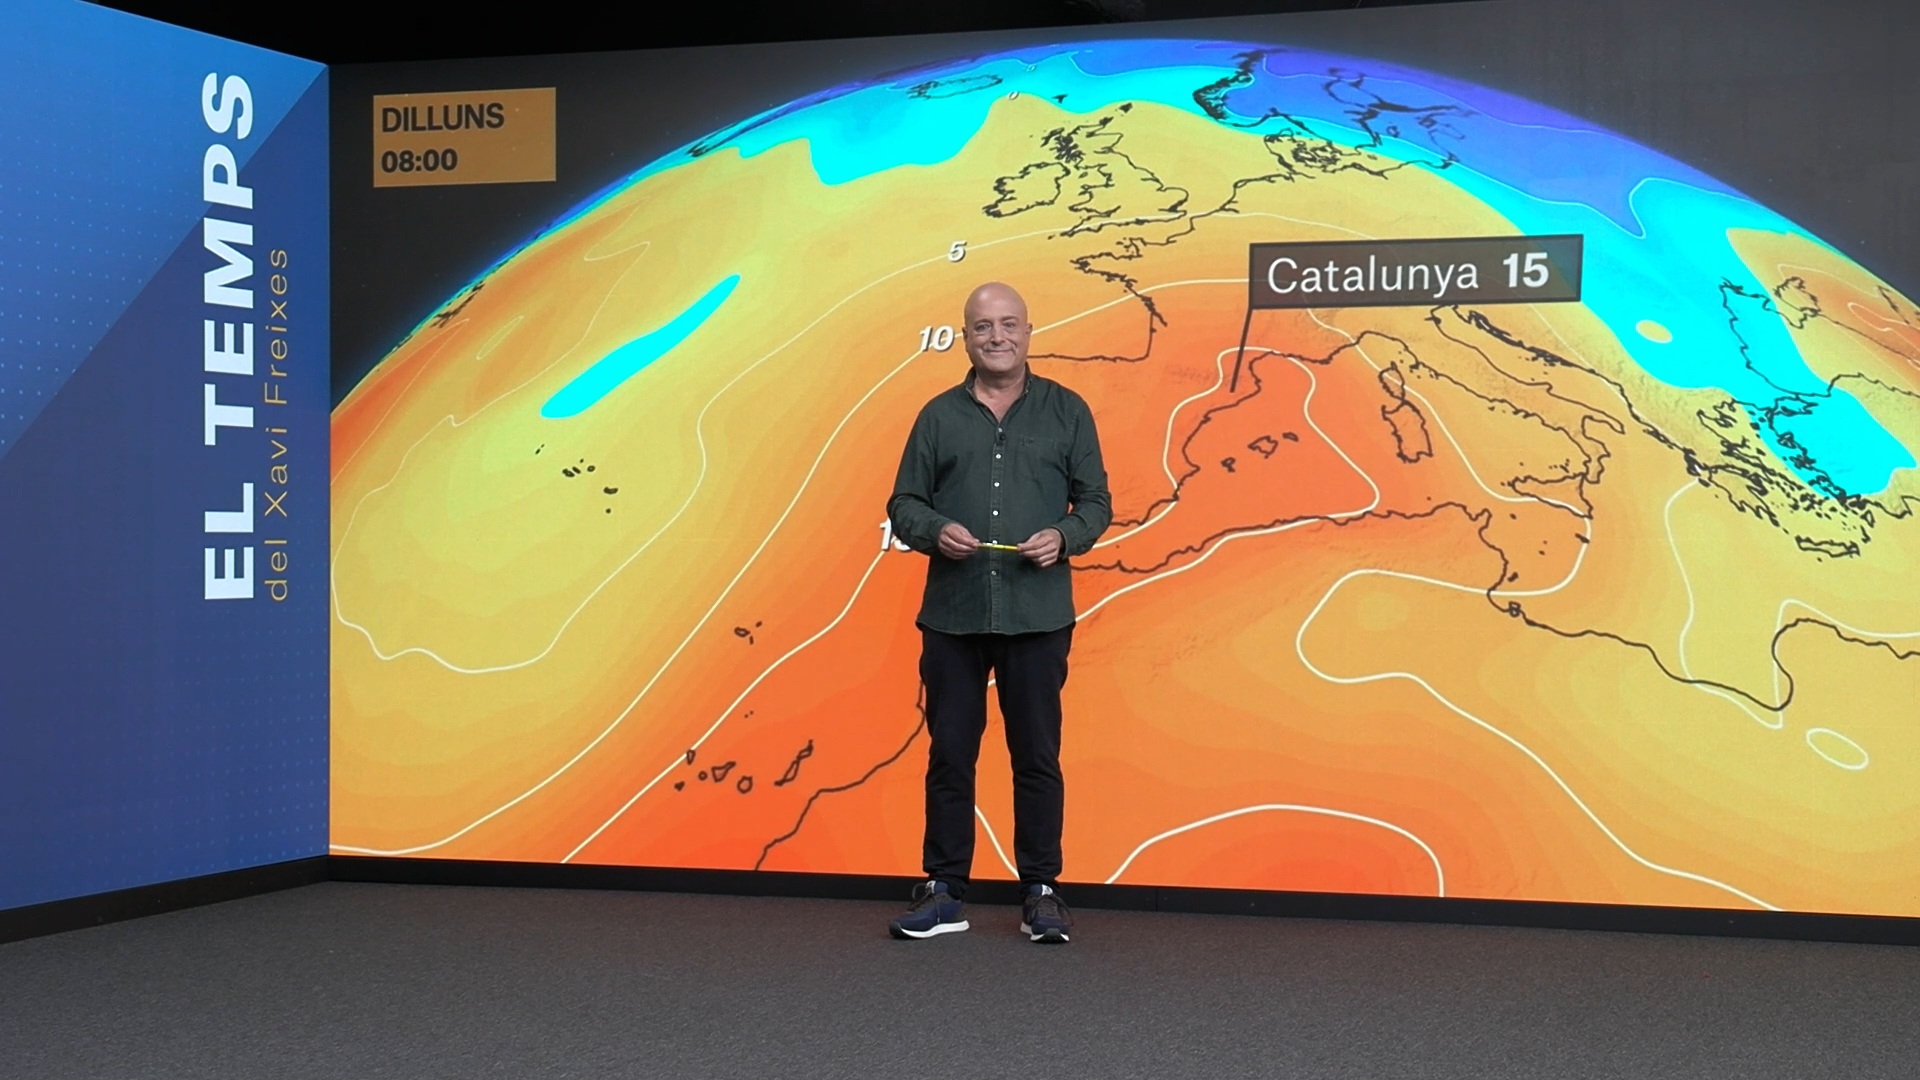 La previsió del temps anuncia canvis sobtats a Catalunya: paraigües i jaquetes?